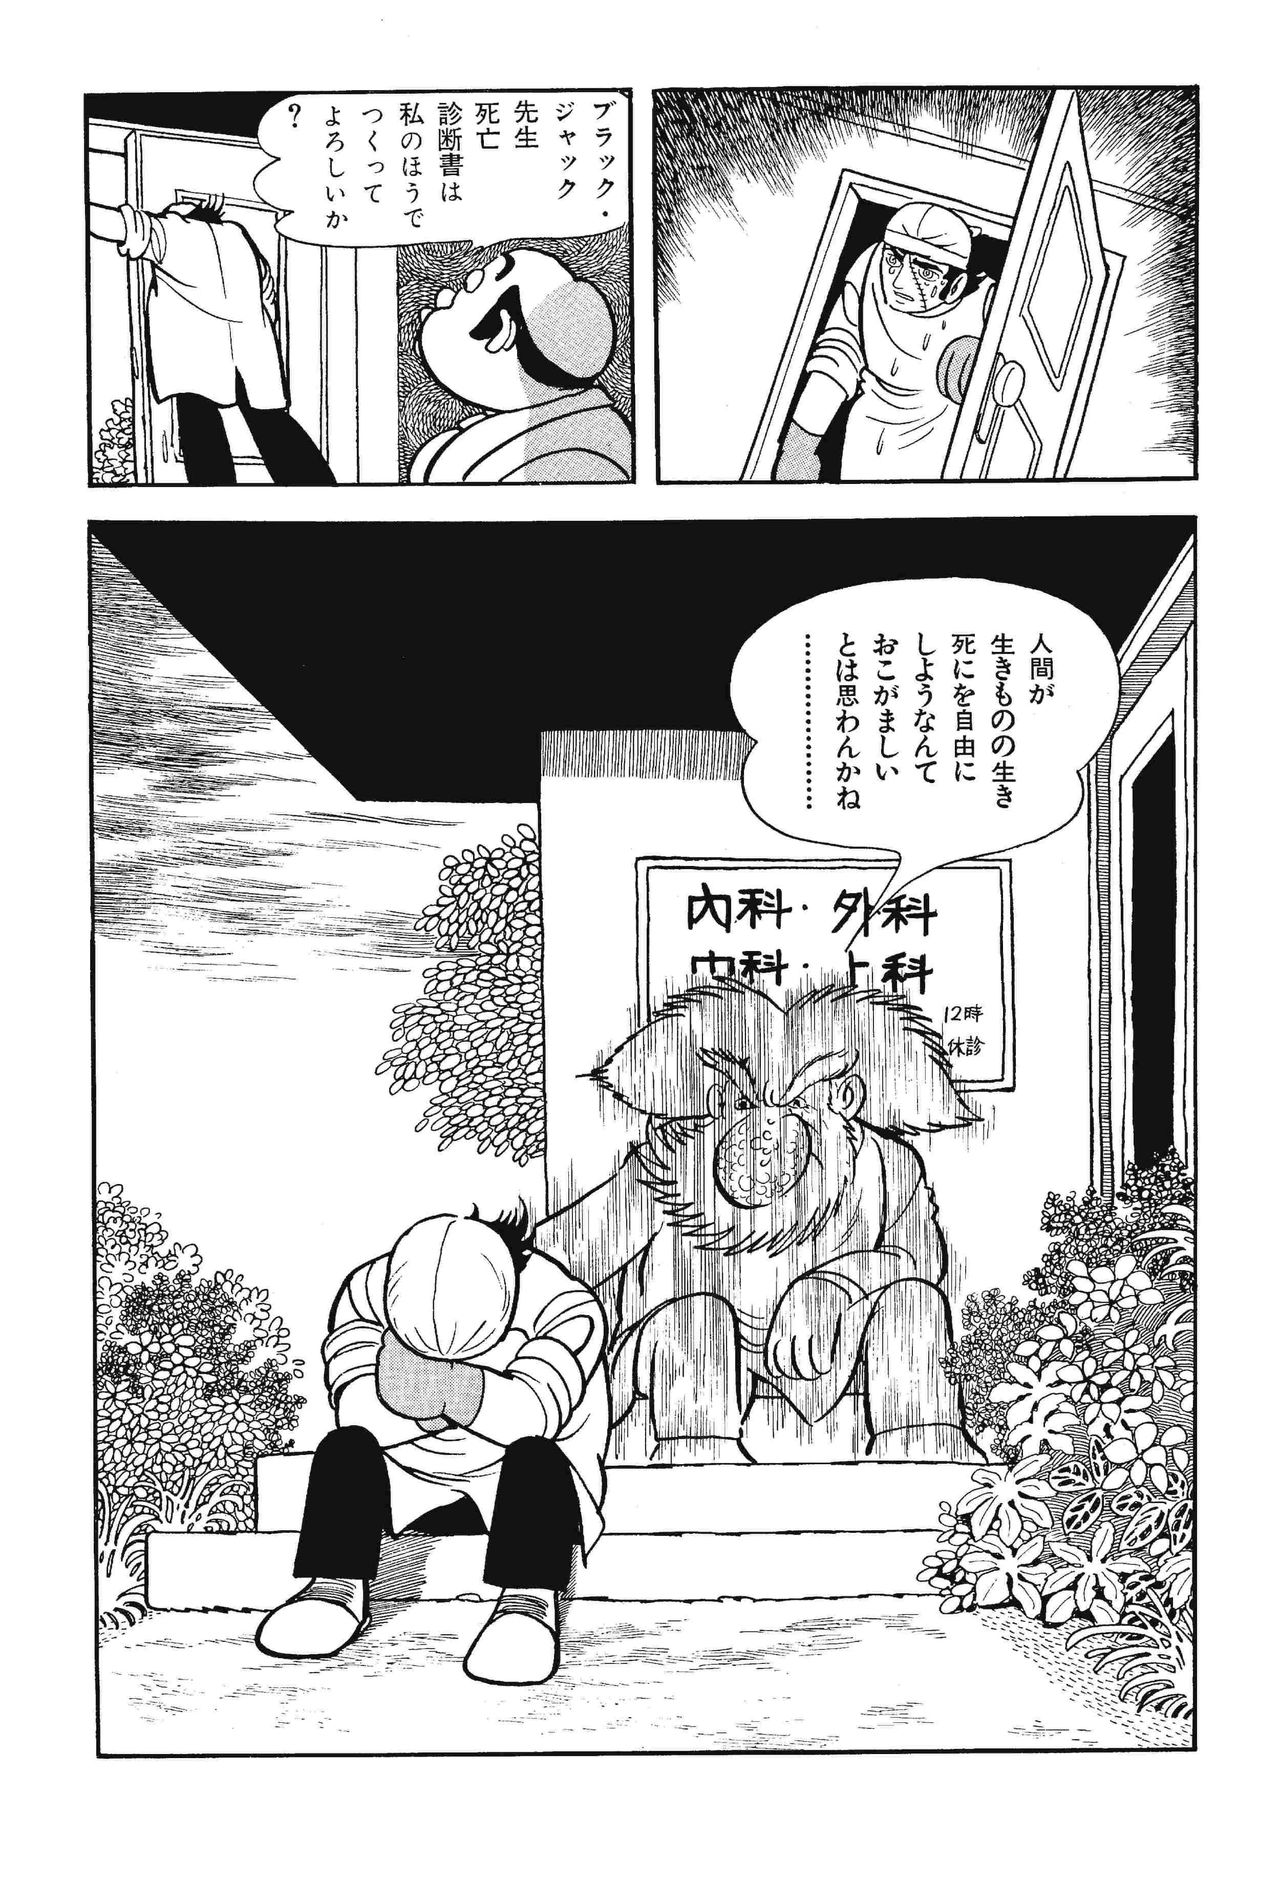 El alma del Dr. Honma se dirige a Black Jack en una famosa escena que representa la esencia de la obra. © Tezuka Productions